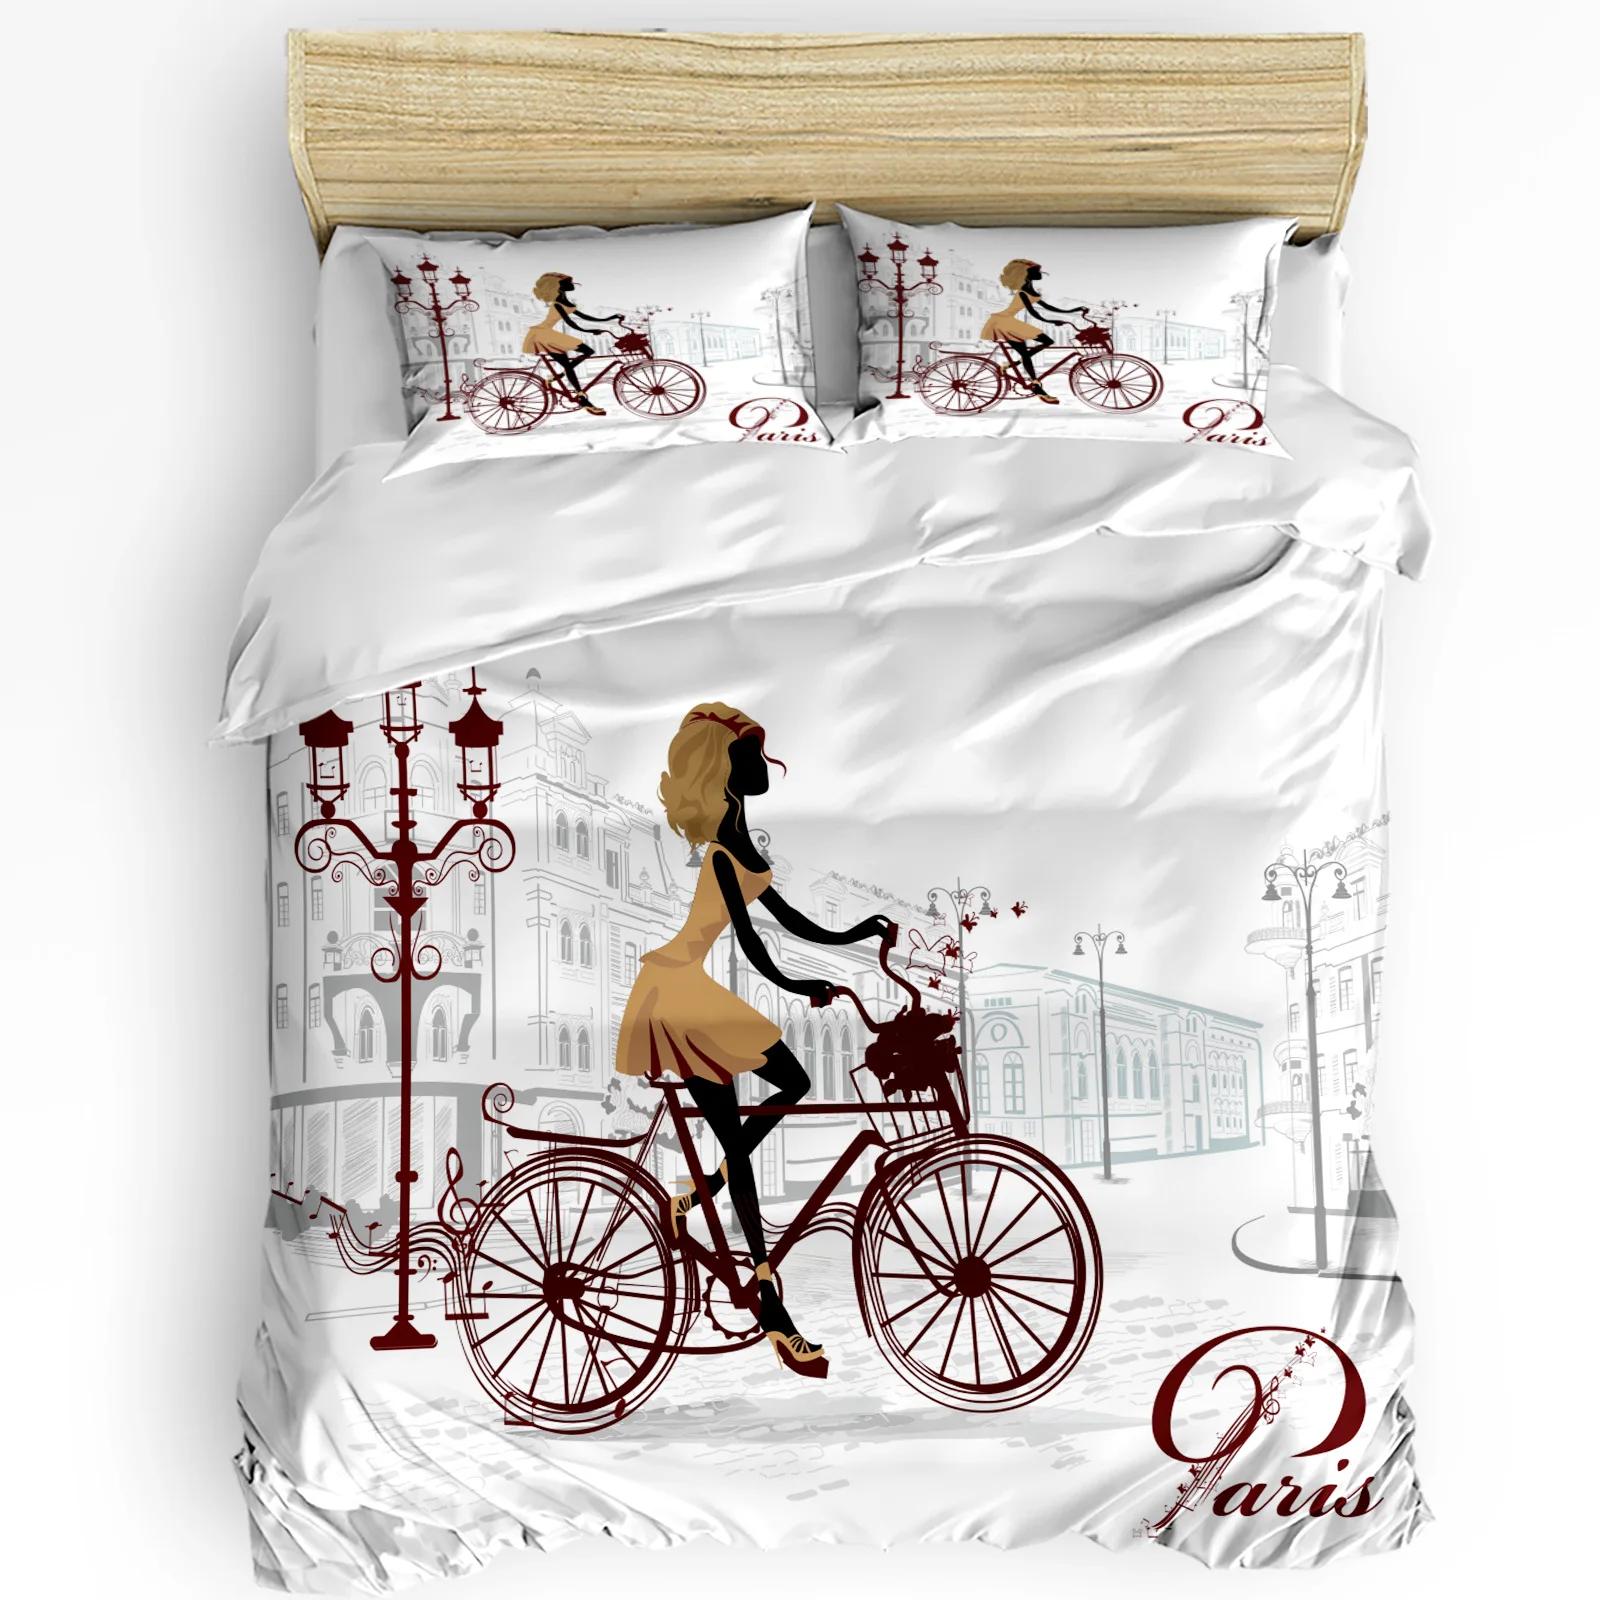 Bicycle Girl Paris Street Romance Architecture Duvet Cover 3pcs Bedding Set Home Textile Quilt Cover Pillowcases No